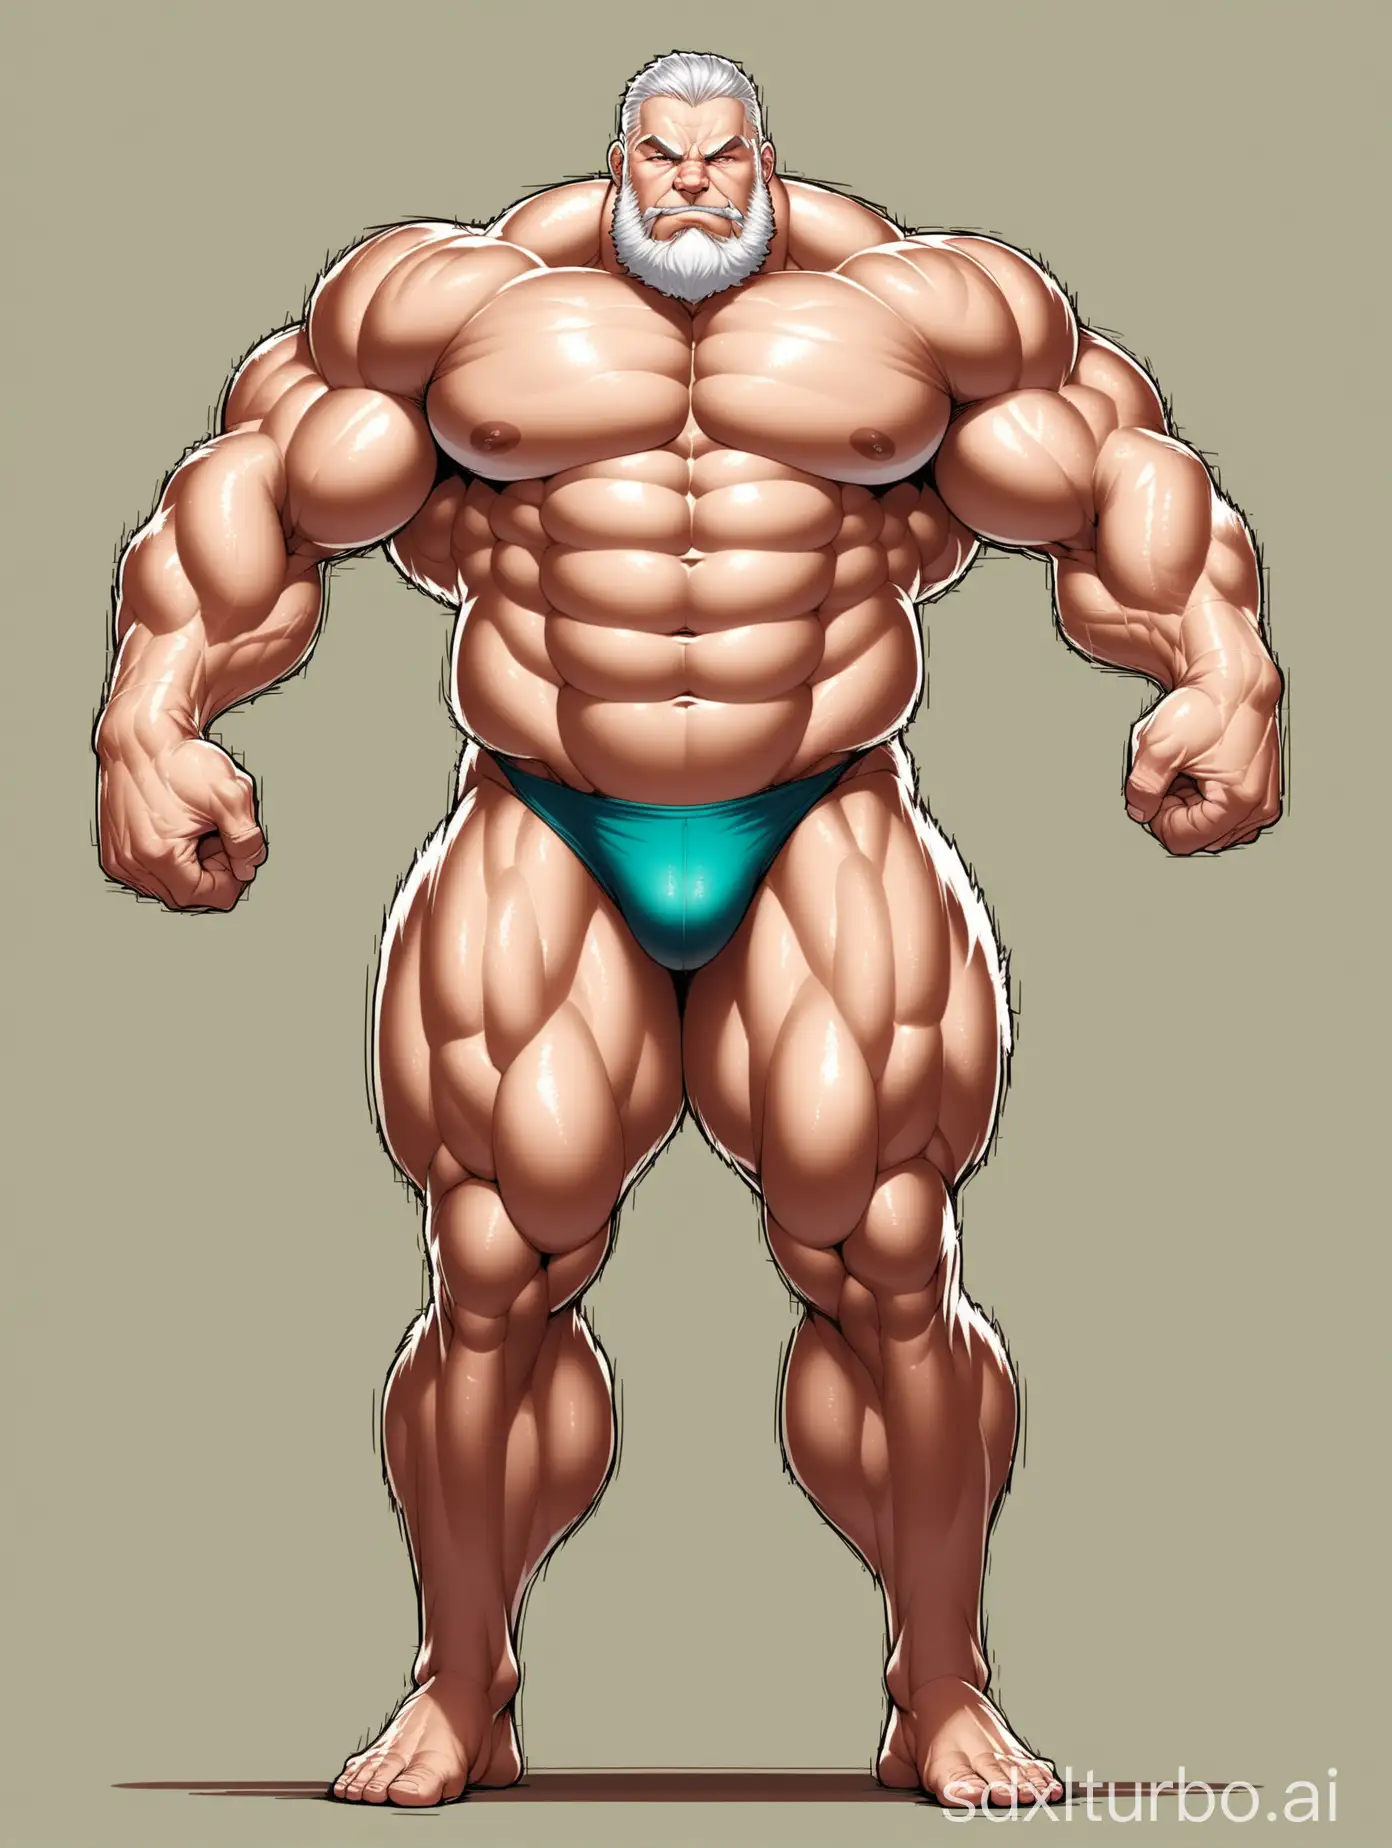 Gigantic-Bodybuilder-Flexing-Muscles-in-Underwear